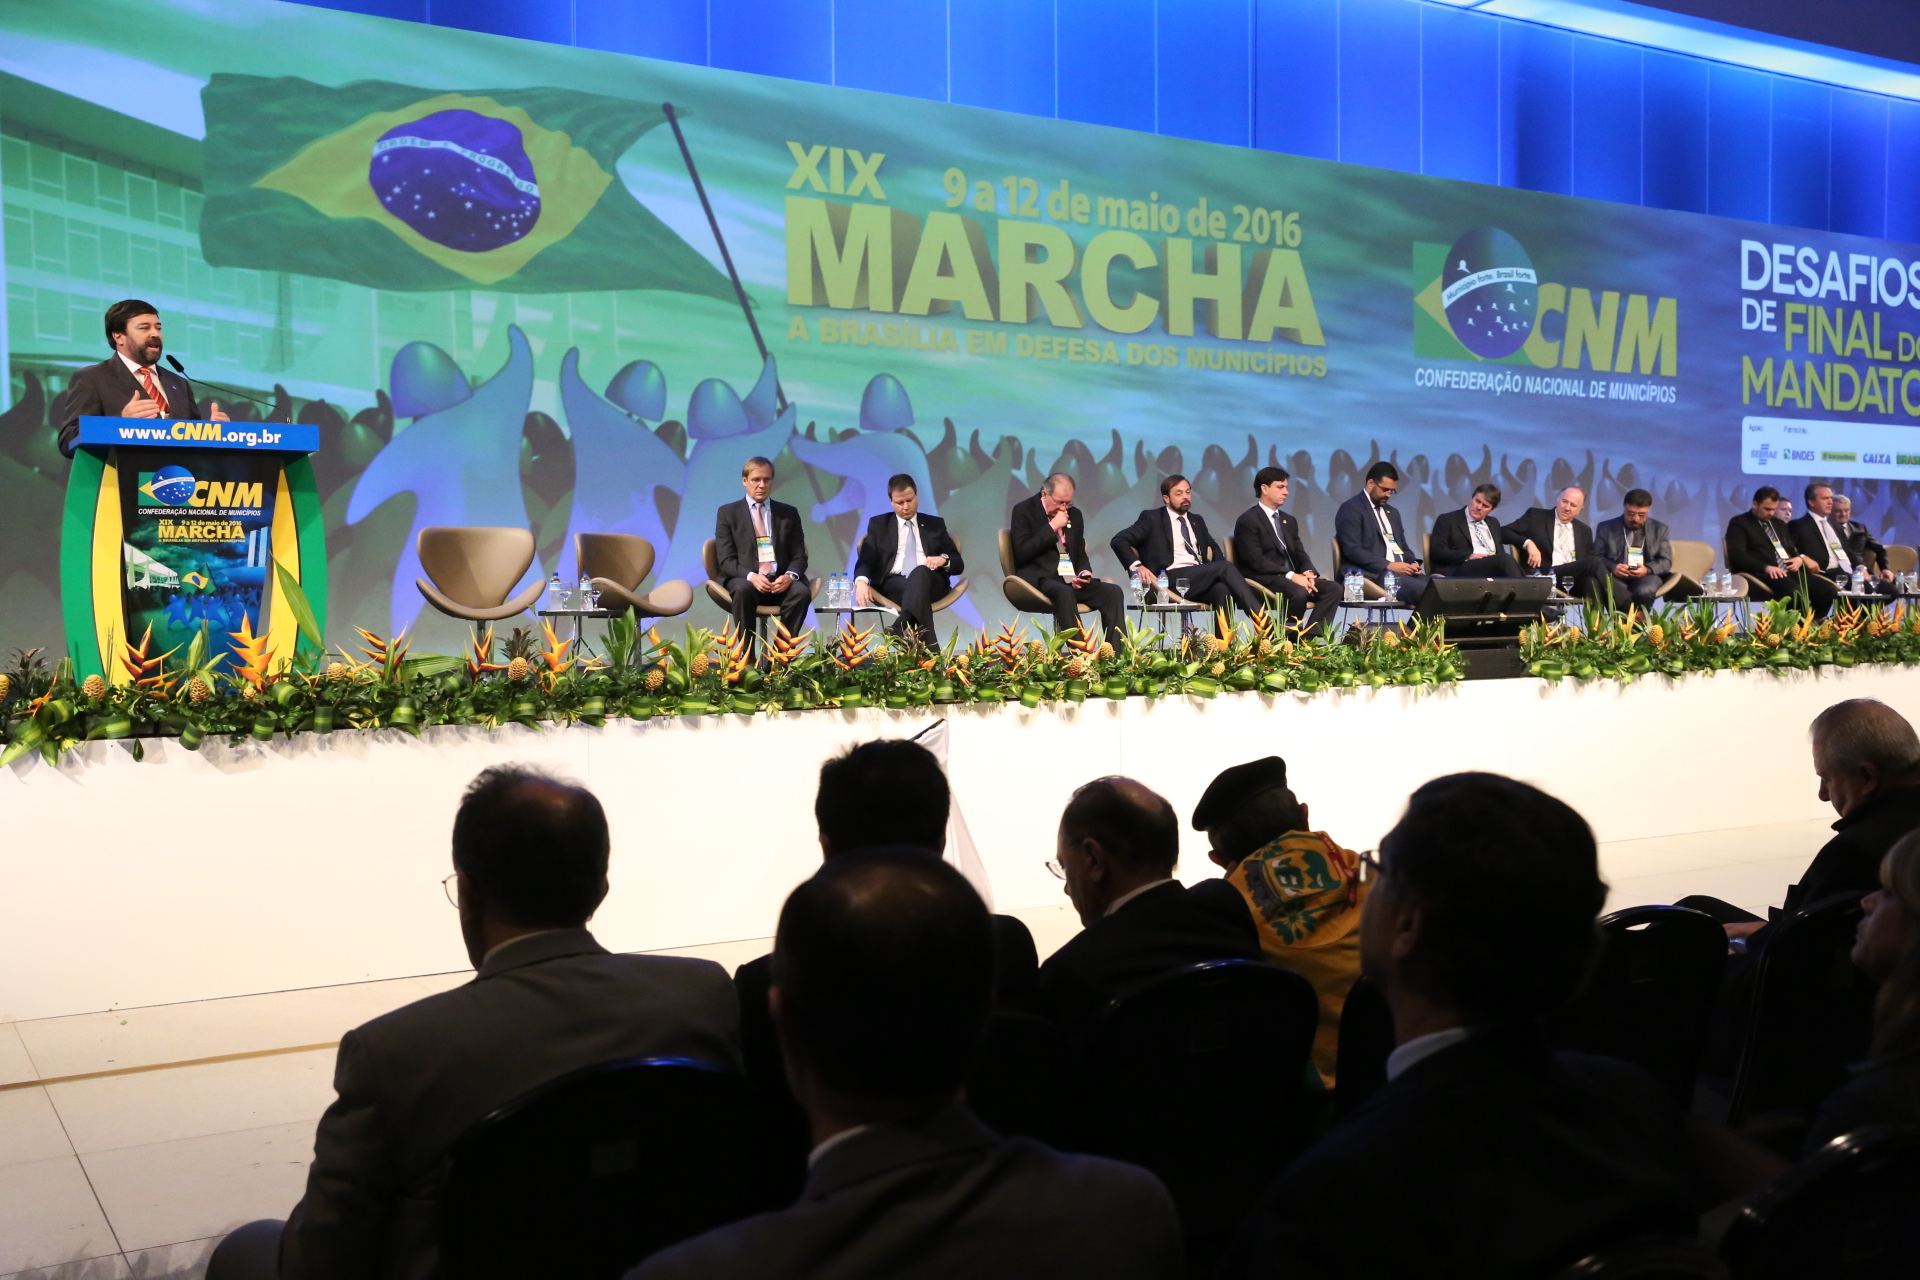 Prefeitos e presidenciáveis se reúnem na XXI Marcha a Brasília em Defesa dos Municípios.